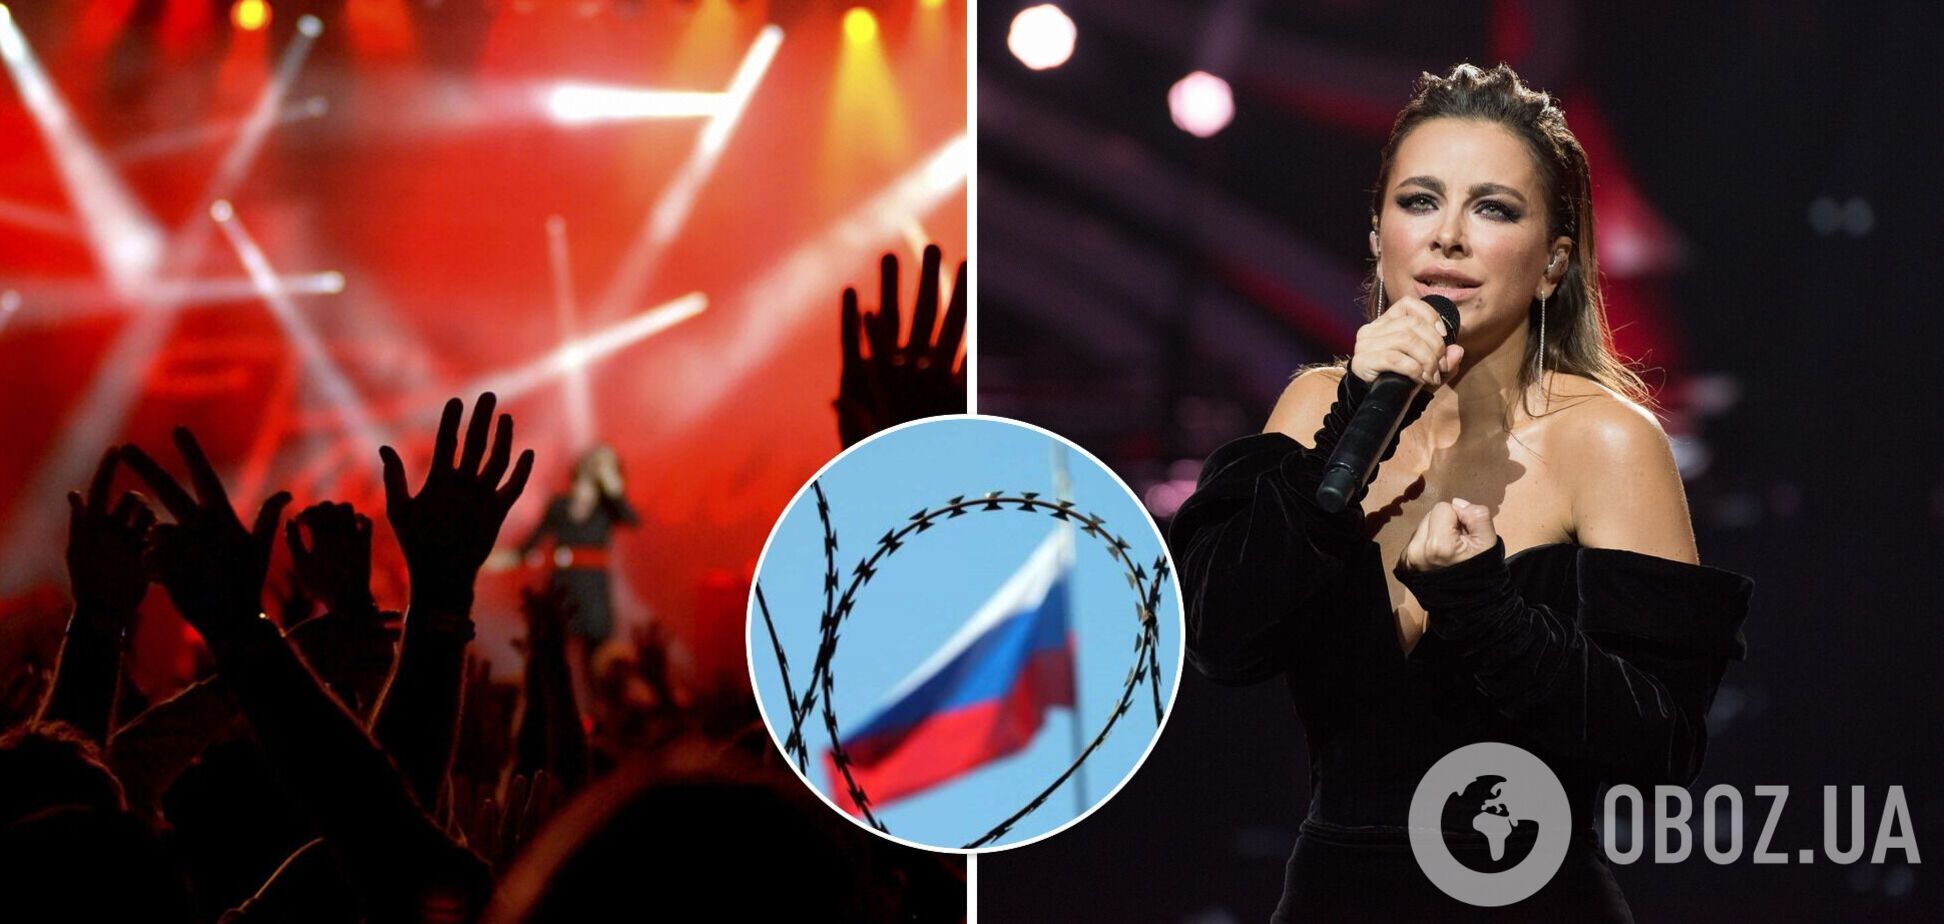 Концерт Ані Лорак у Новосибірську скасували: росЗМІ назвали українську співачку зрадницею